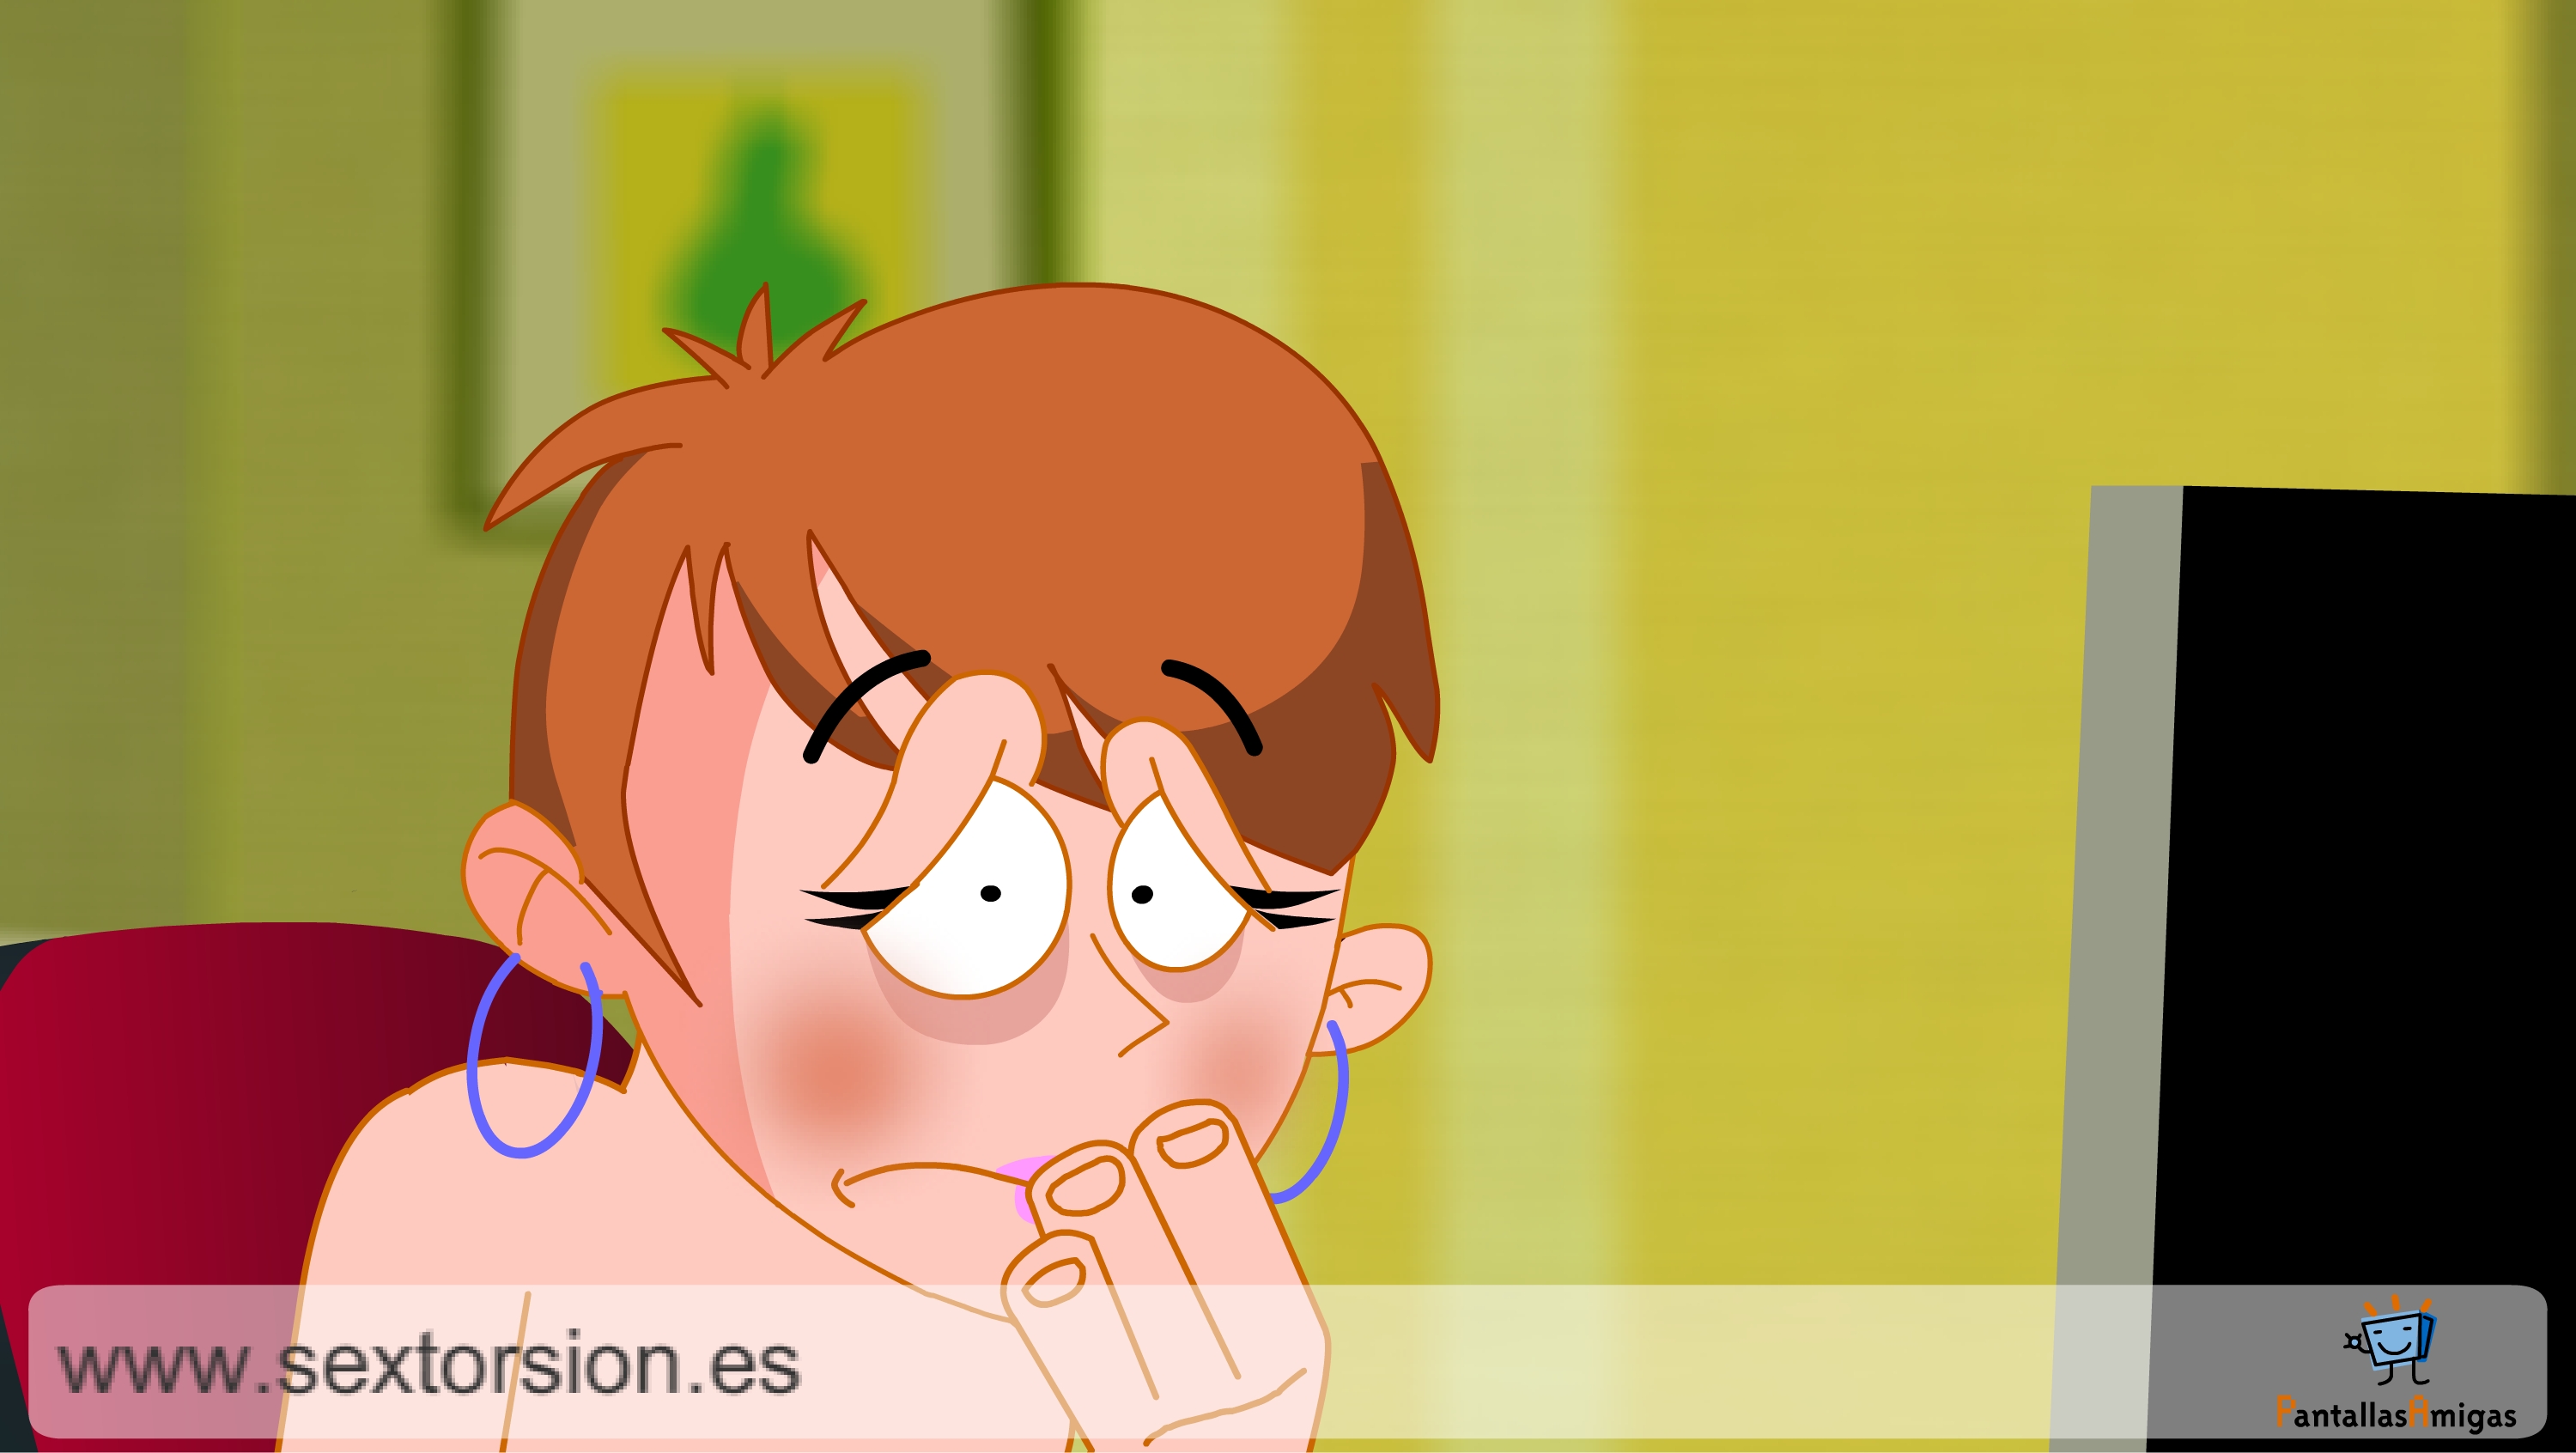 Captura de animación sobre sextorsión. COPYRIGHT EDEX CRC / PantallasAmigas